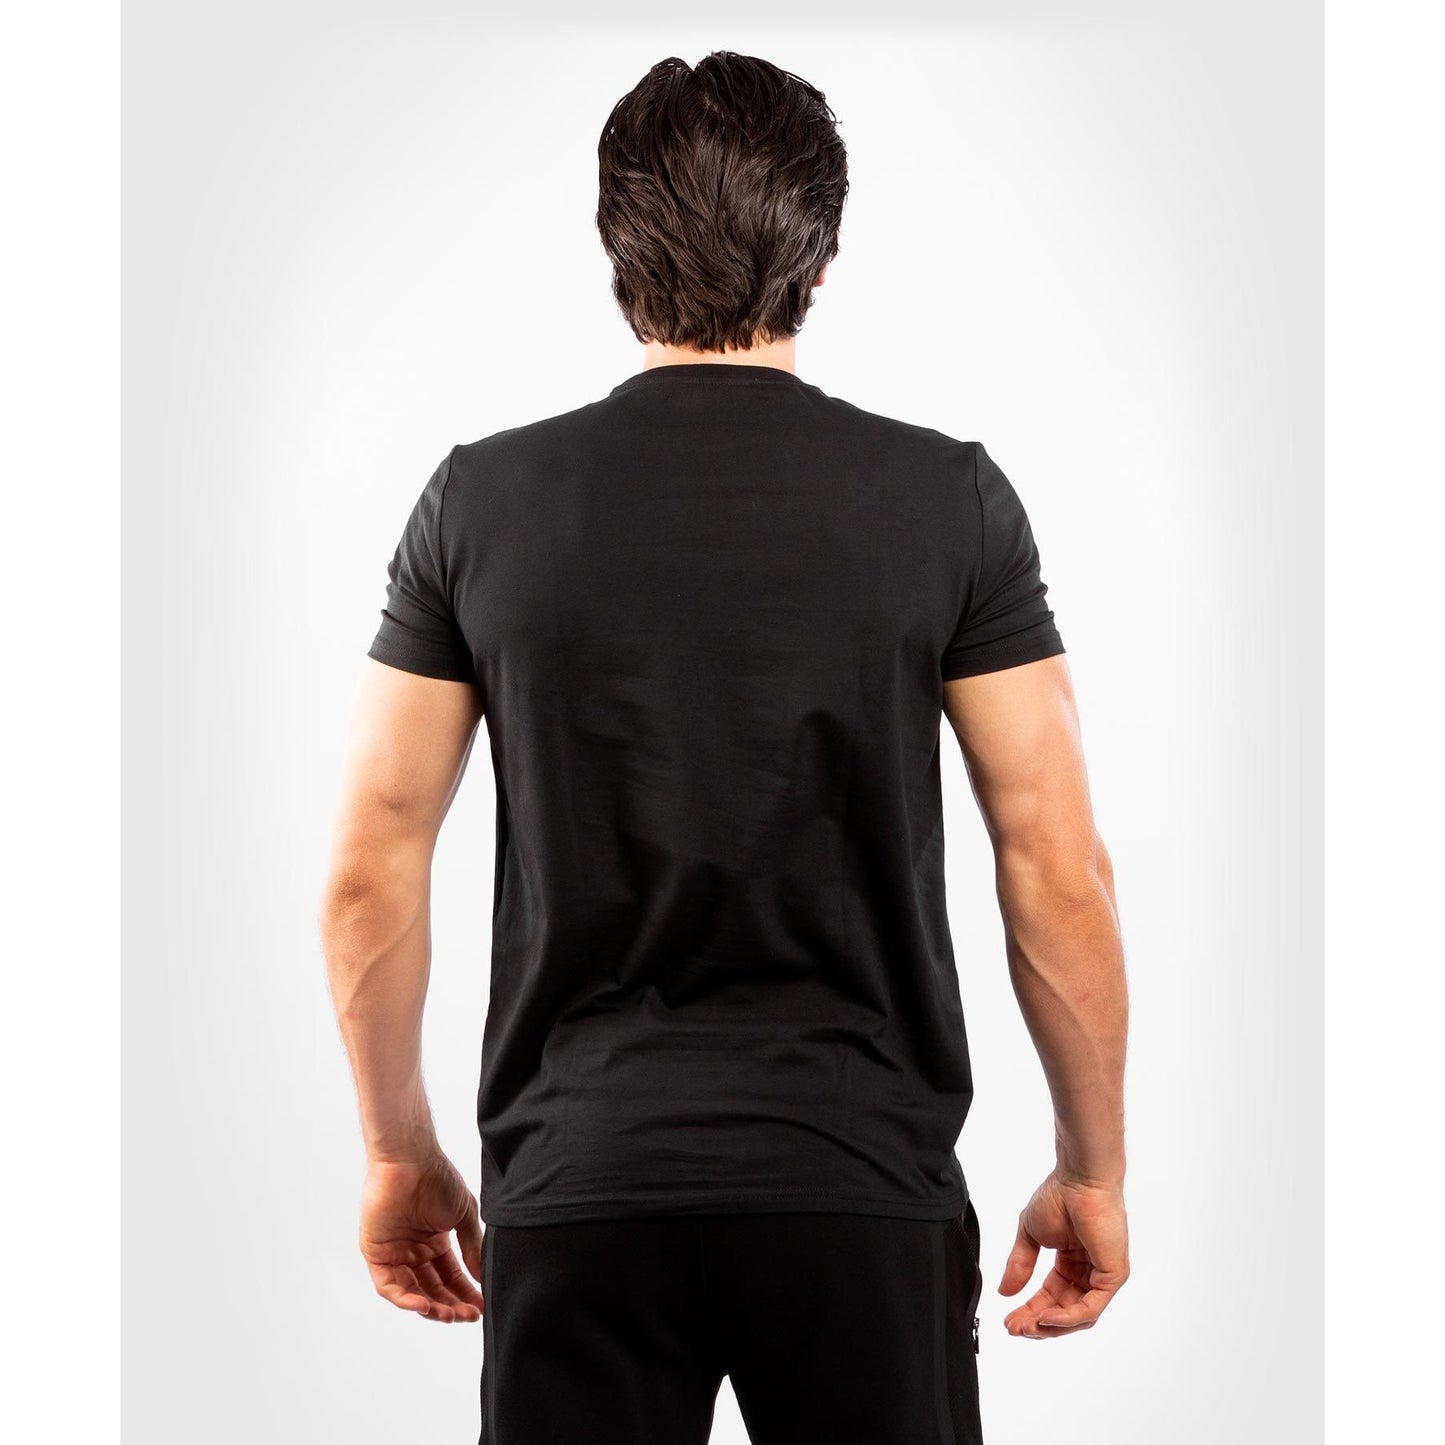 Plain black back to the Venum Classic T shirt 